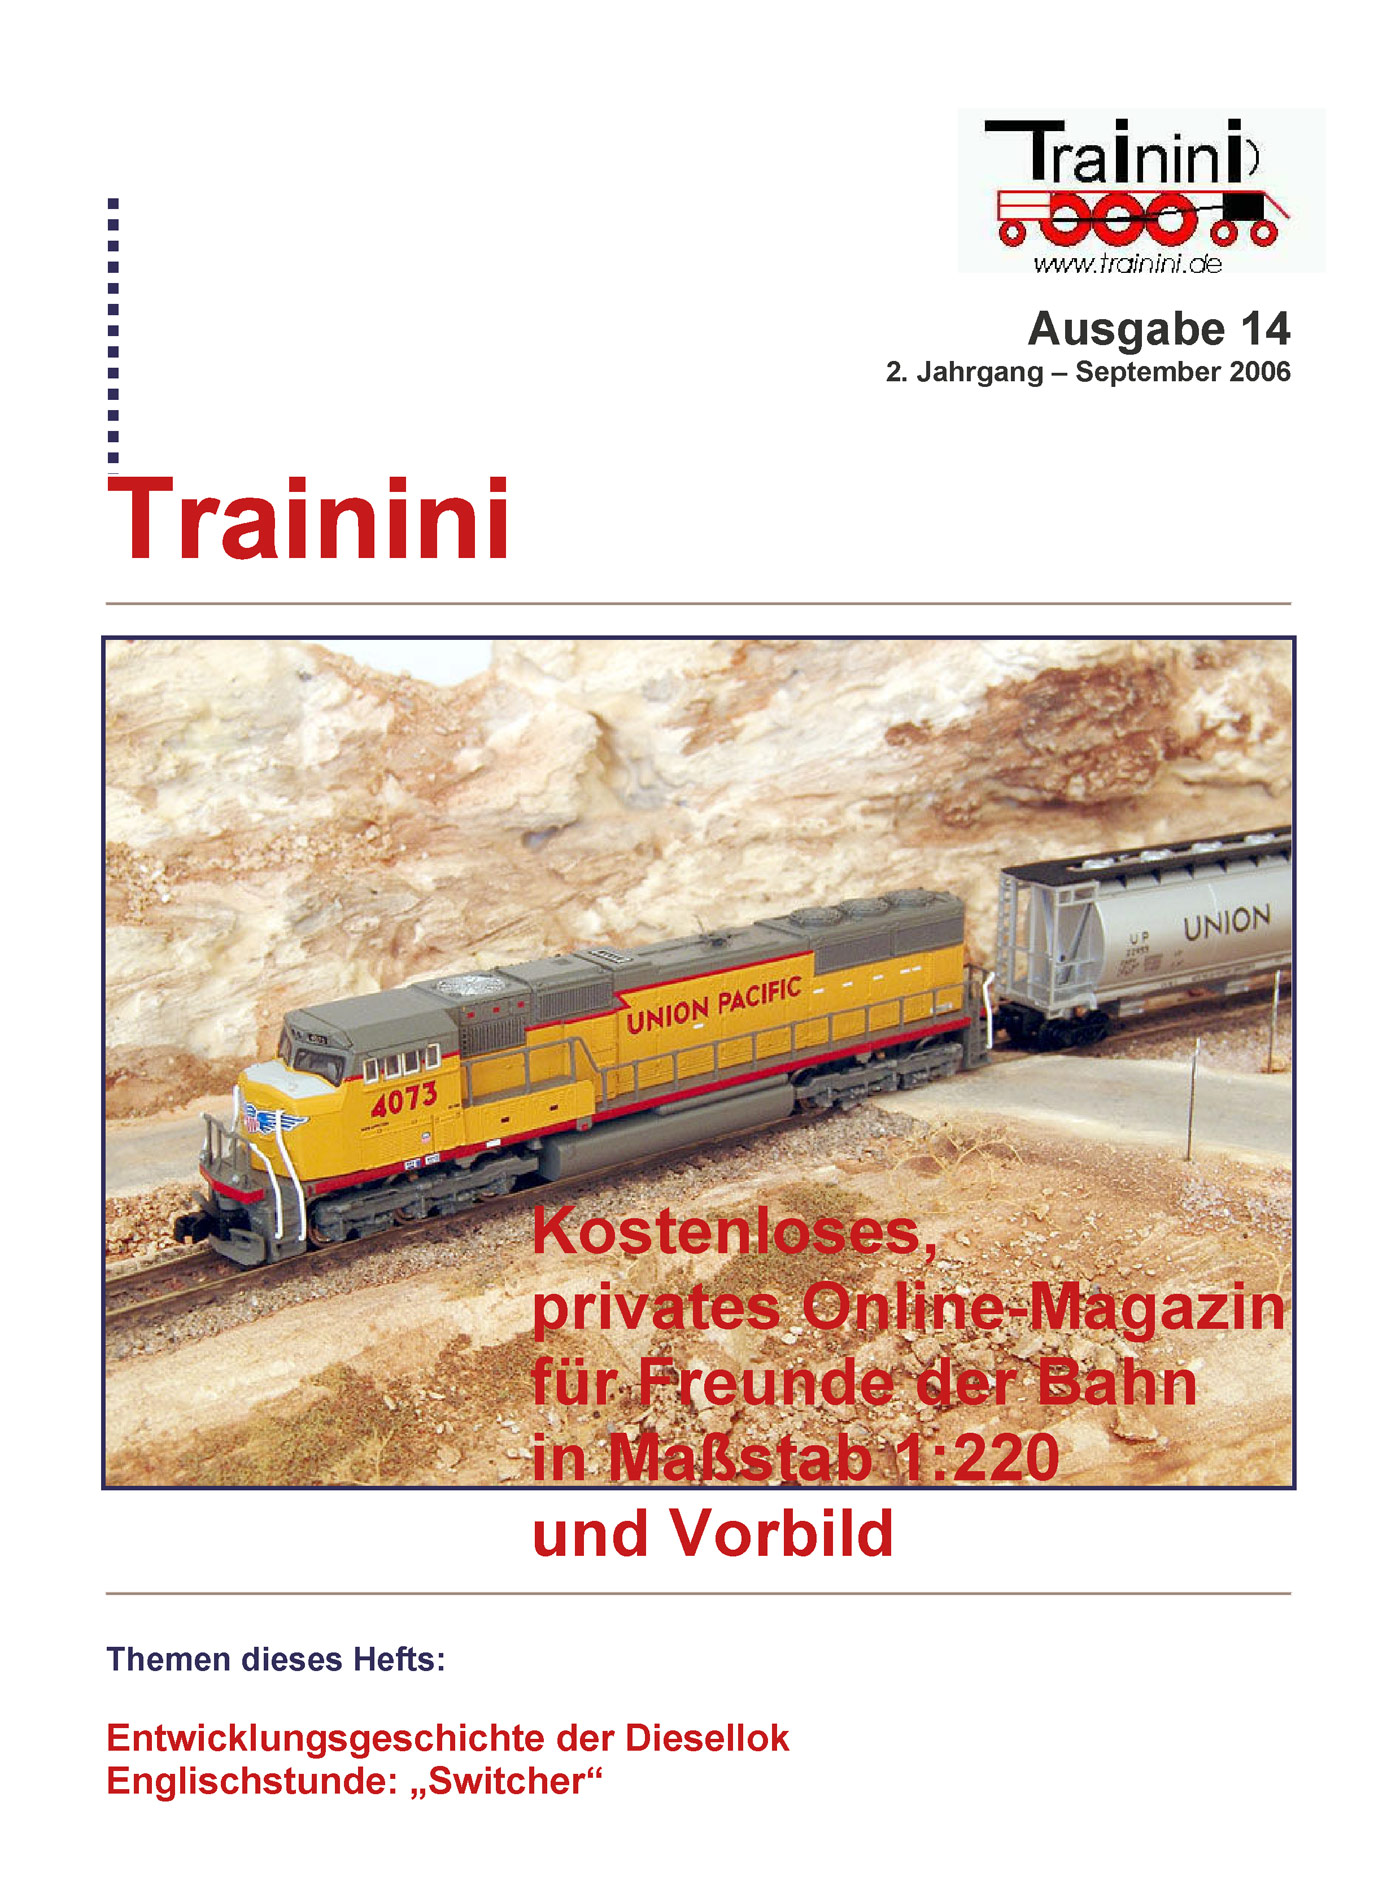 Trainini Ausgabe September 2006